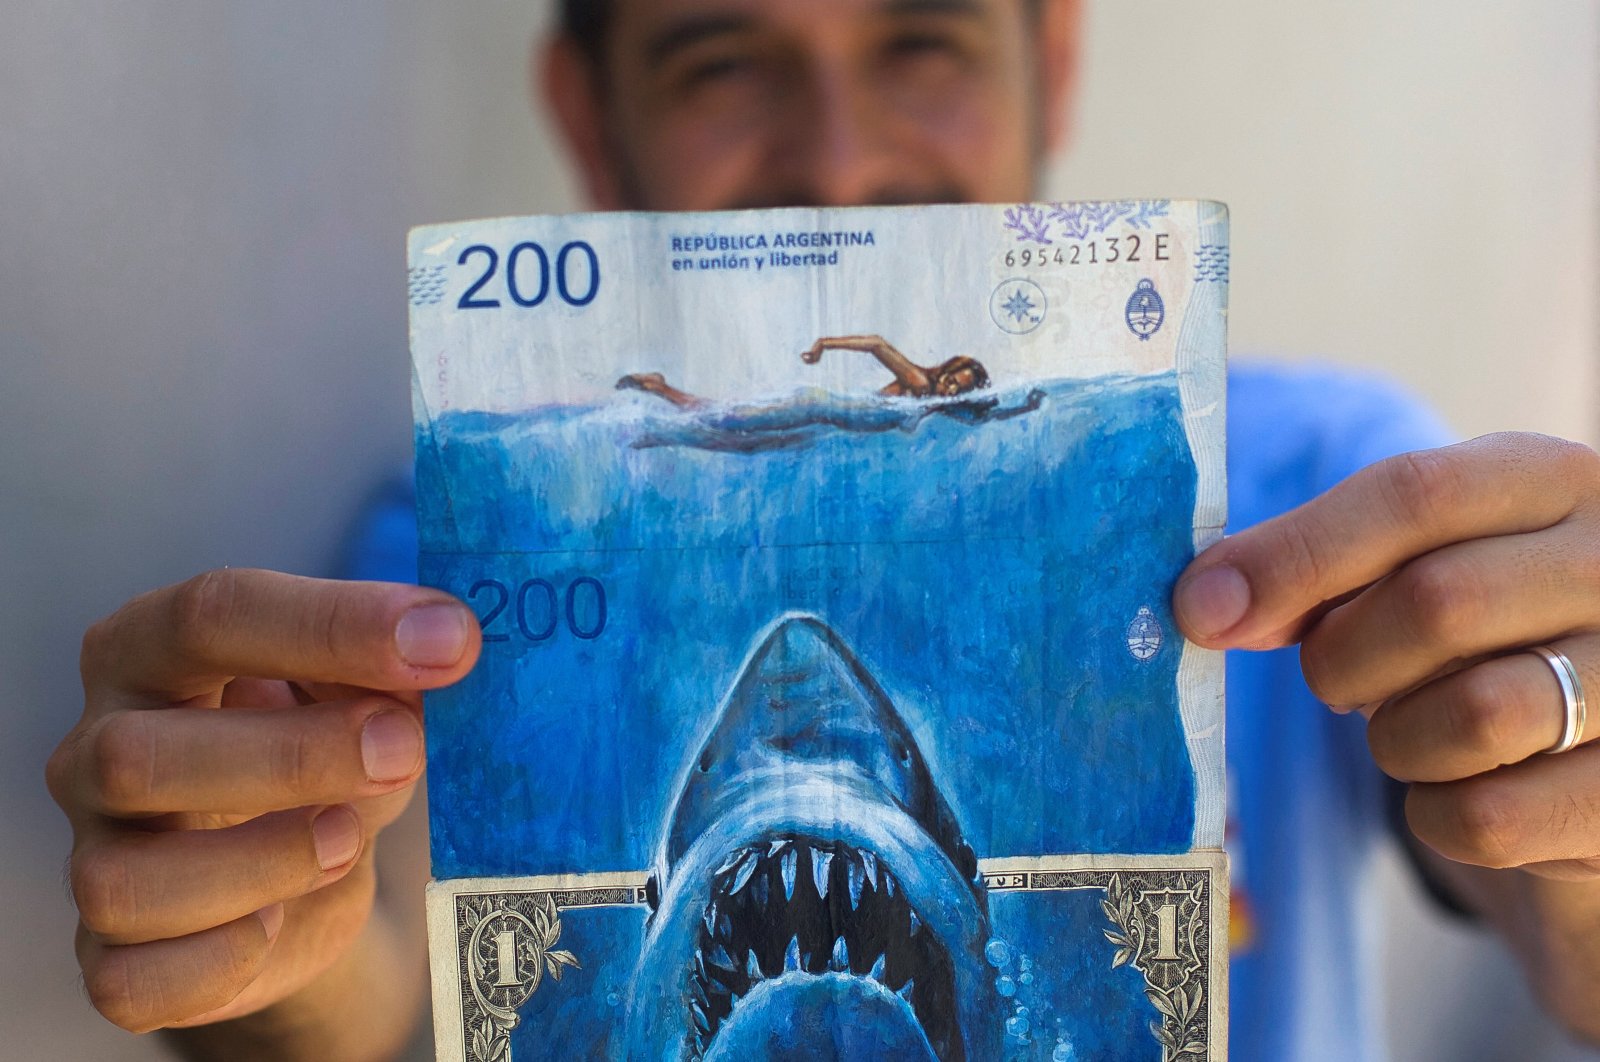 Uang kertas yang terkena inflasi menjadi karya seni oleh seniman Argentina